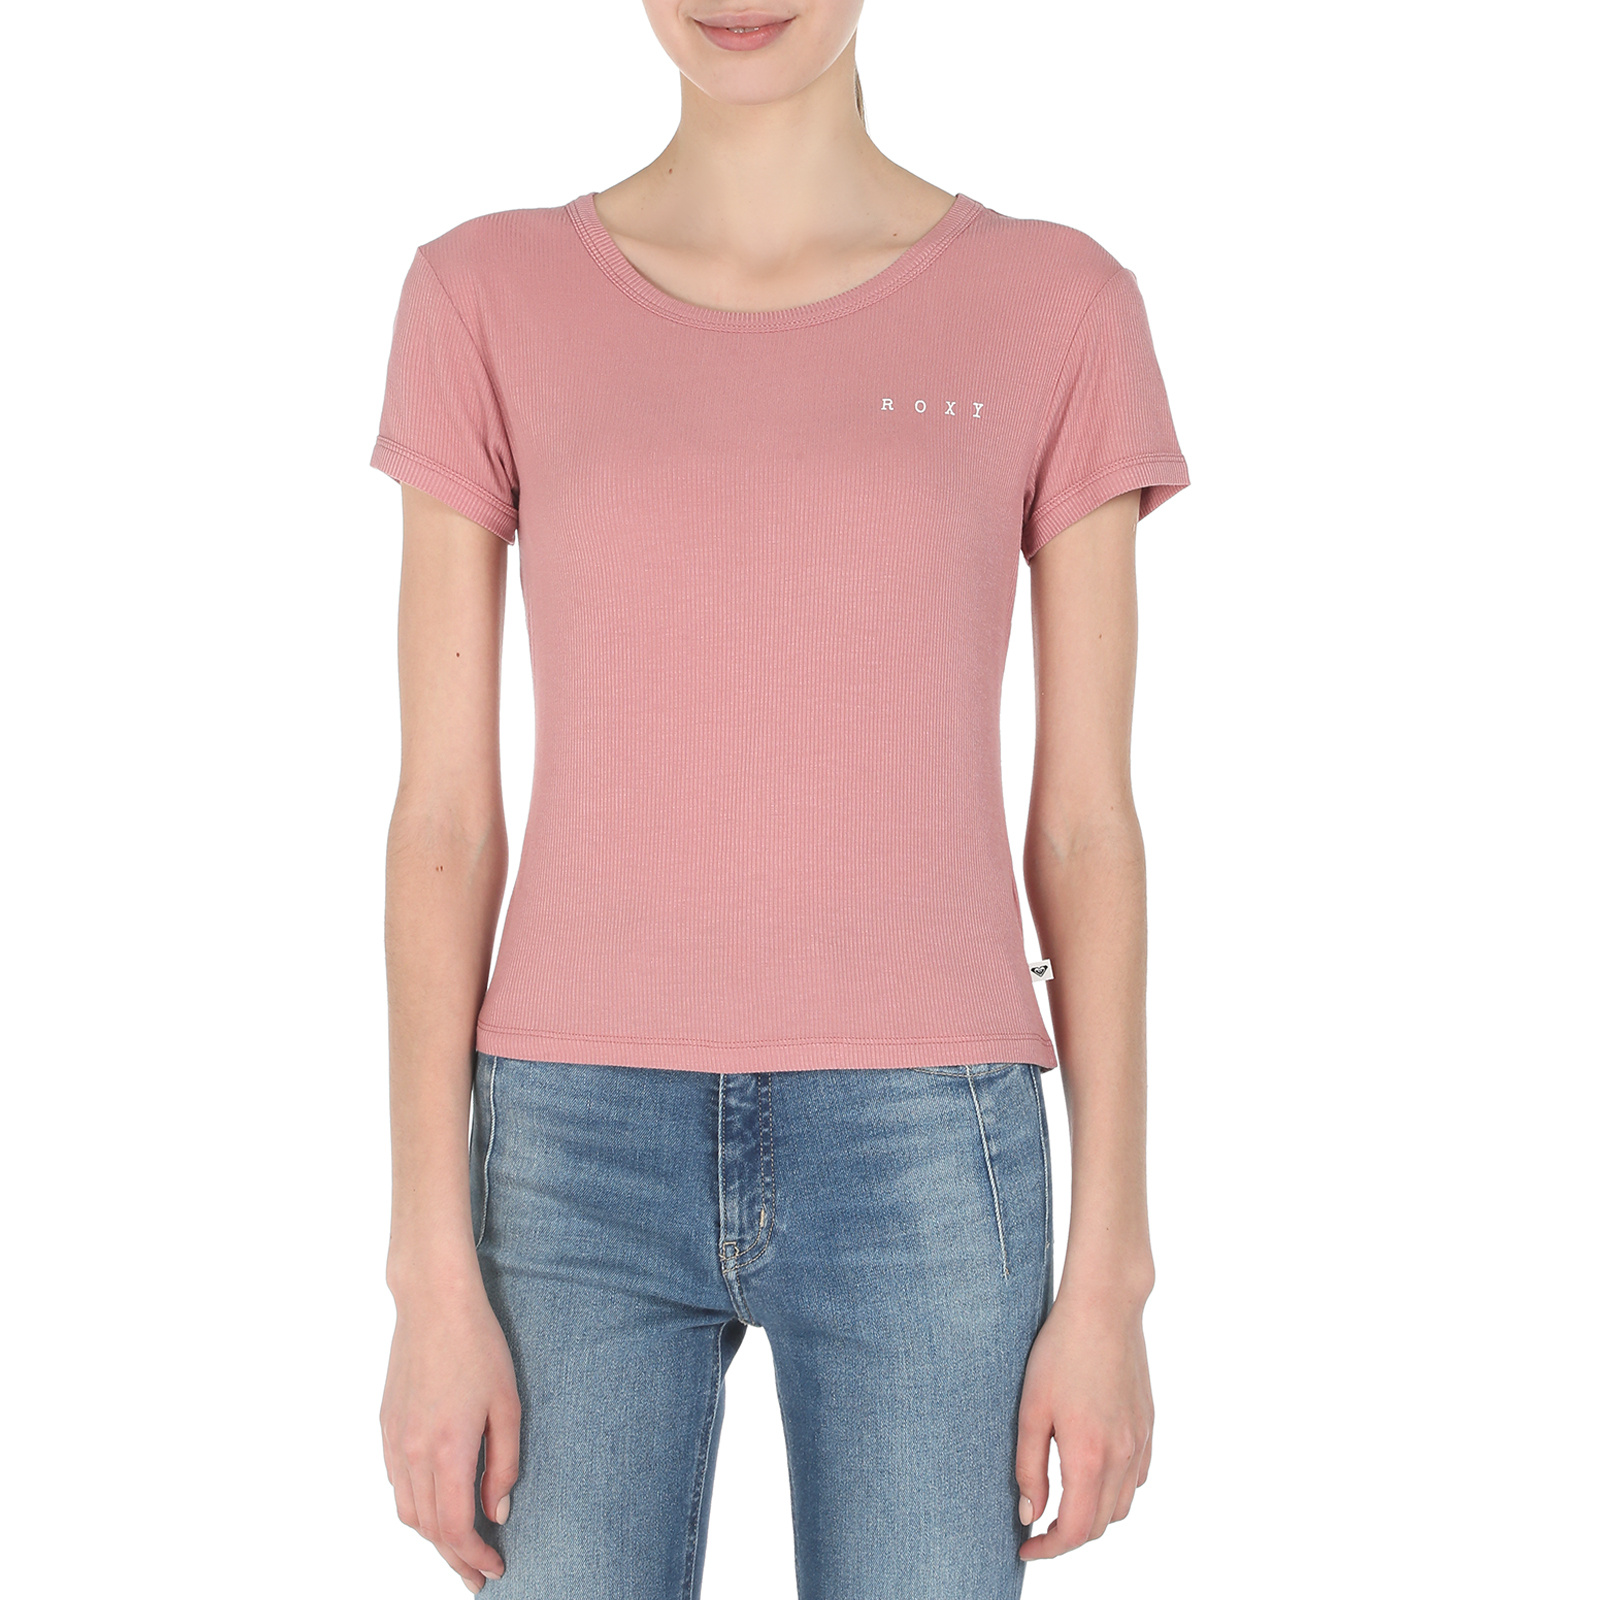 Roxy футболка купить. Рокси футболка. Рокси футболки женские. Erjzt05952 Roxy. Розово синяя майка Roxy.